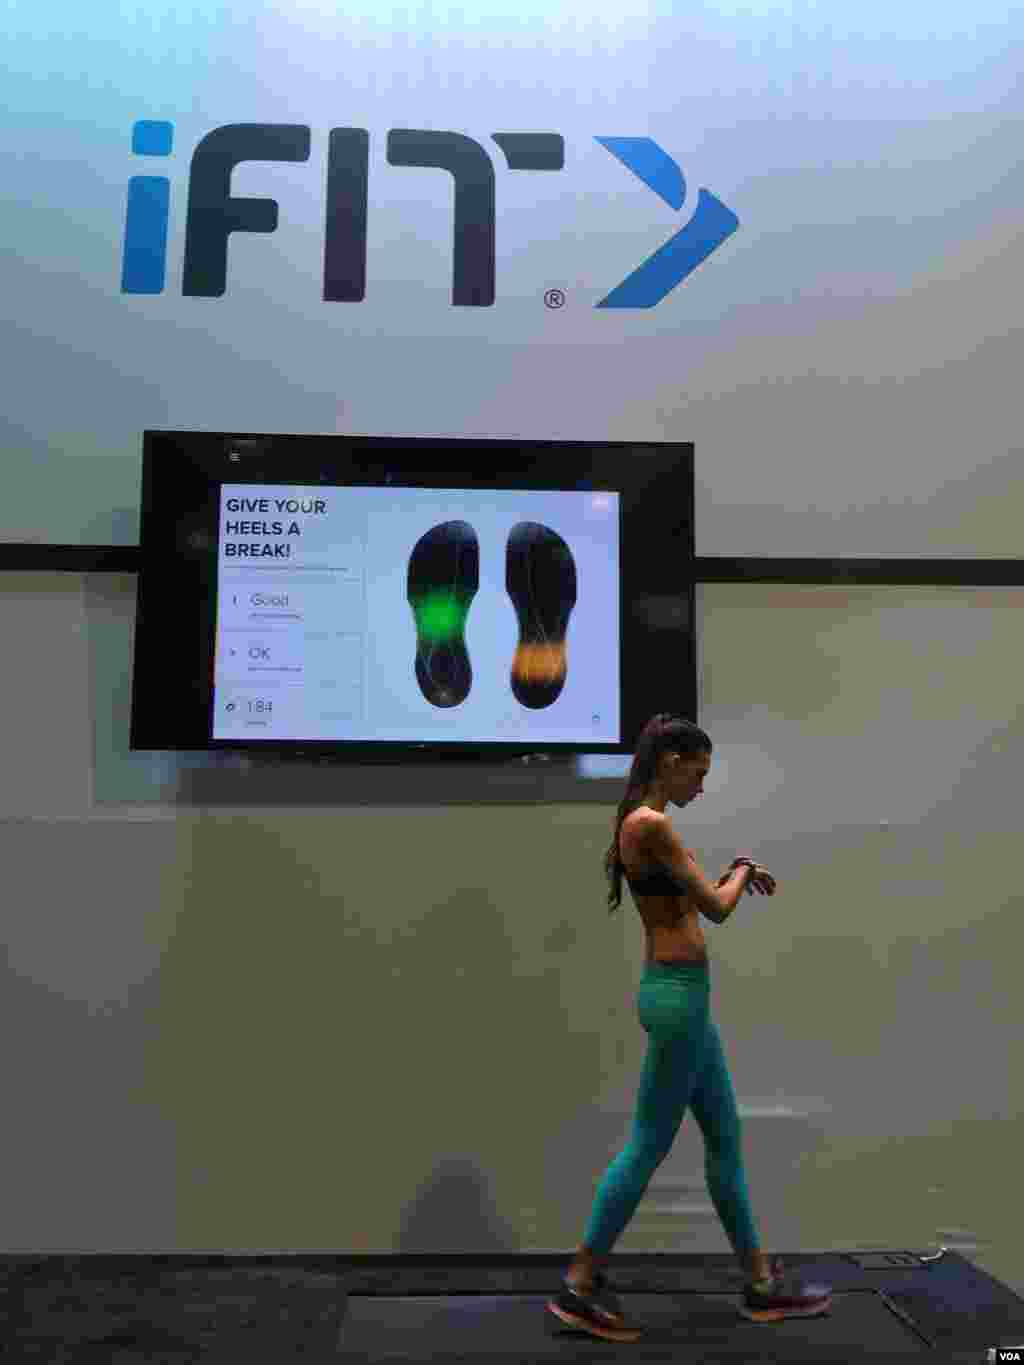 شرکت آیفیت با بررسی فشار وارده روی کف پا، به کاربر بصورت آنی اطلاع میدهد که راه رفتن او صحیح است یا خیر.